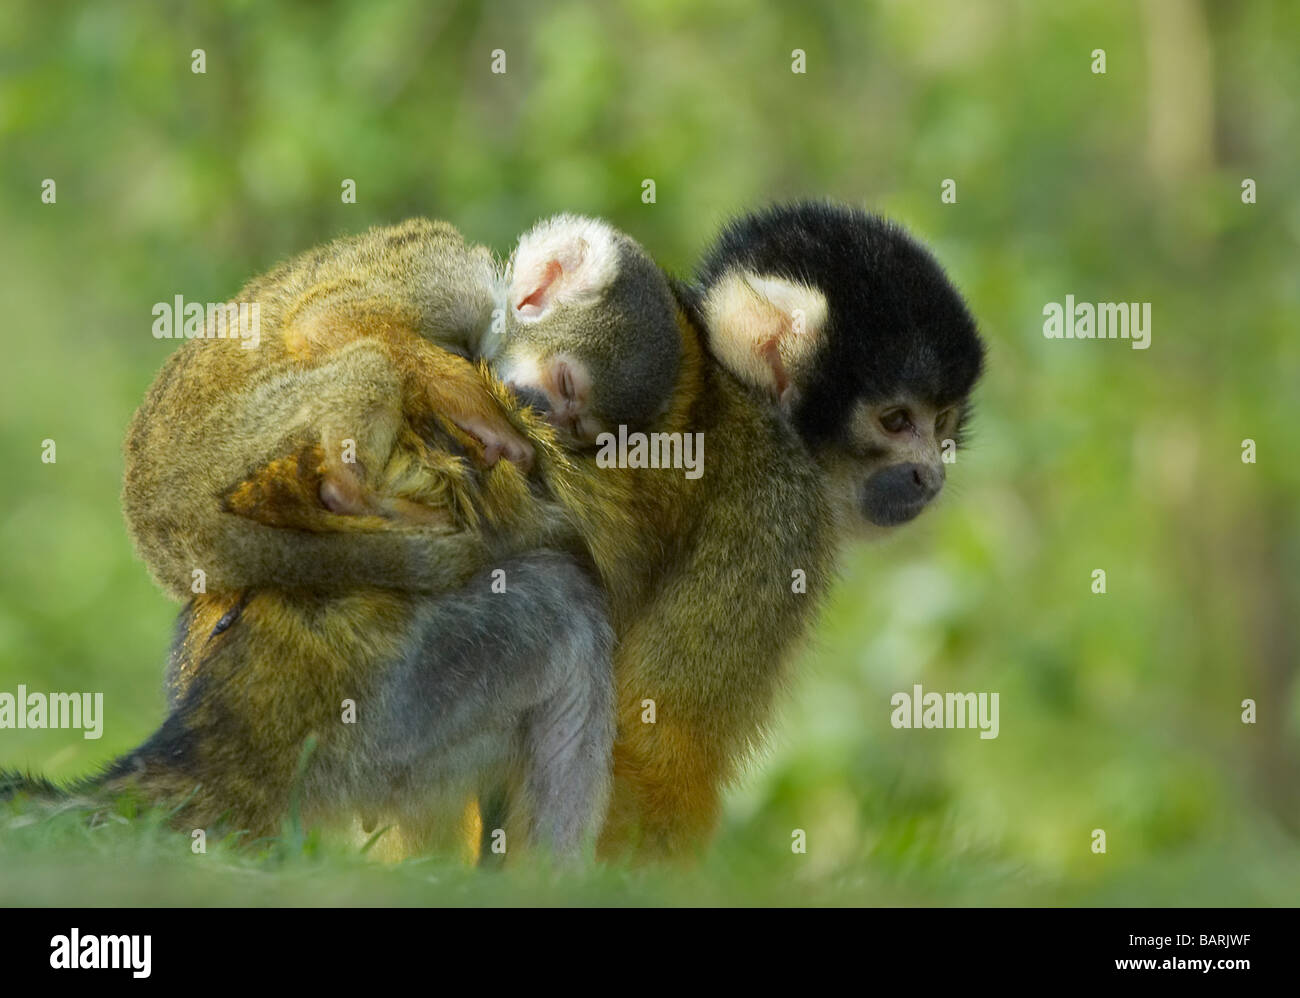 Lindo mono ardilla bebé en madres Saimiri subfamilia saimiriinae atrás Foto de stock